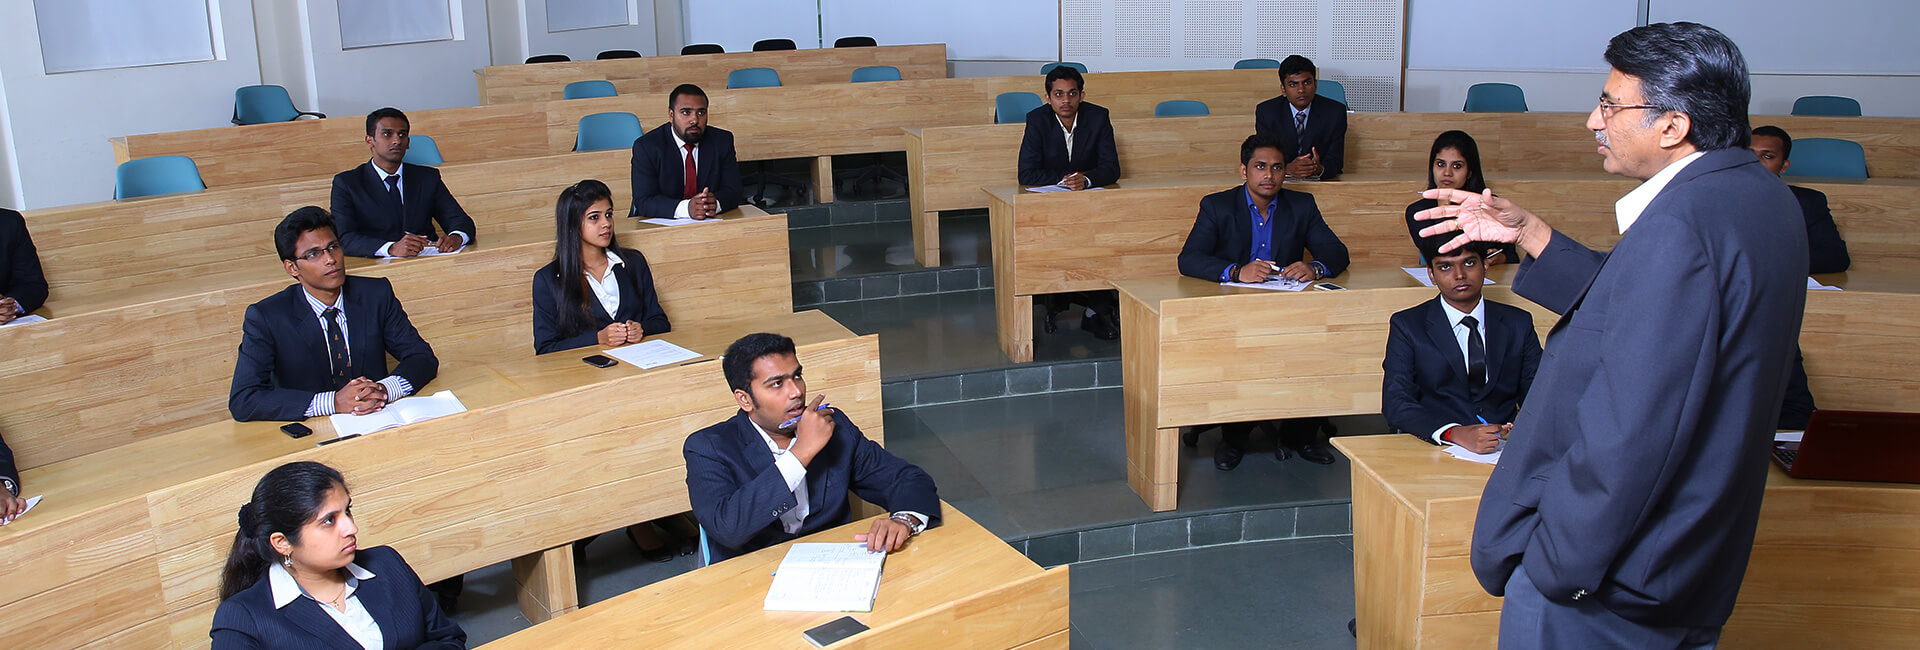 Best Business Schools in Kerala, Trivandrum | Asian School of Business